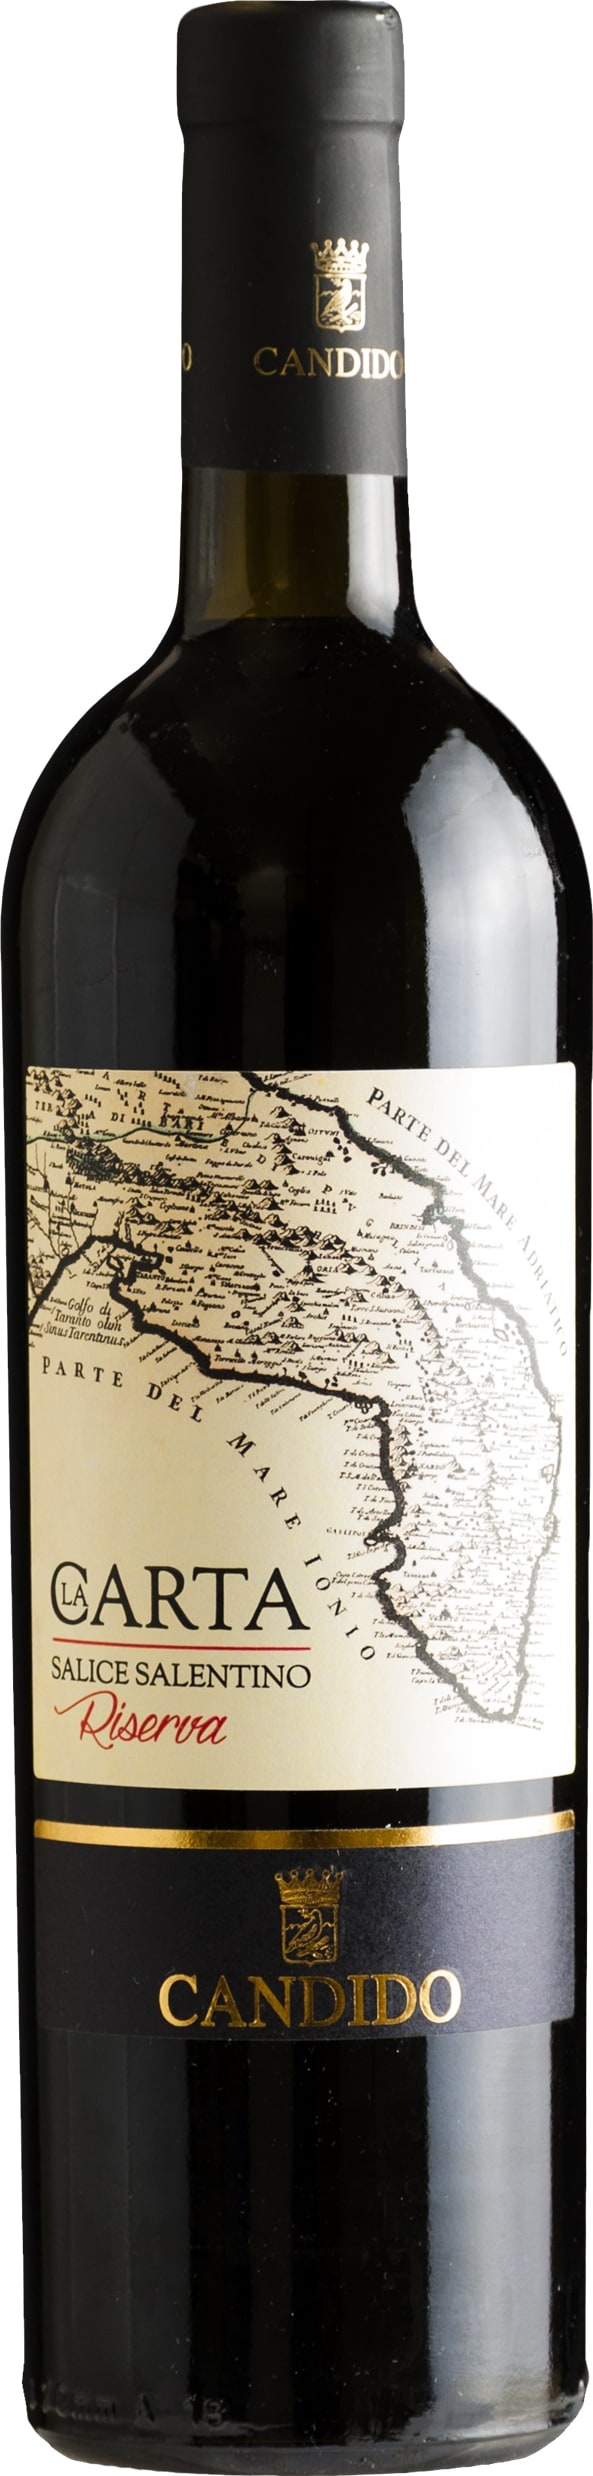 Francesco Candido Salice Salentino Riserva 2020 75cl - Buy Francesco Candido Wines from GREAT WINES DIRECT wine shop